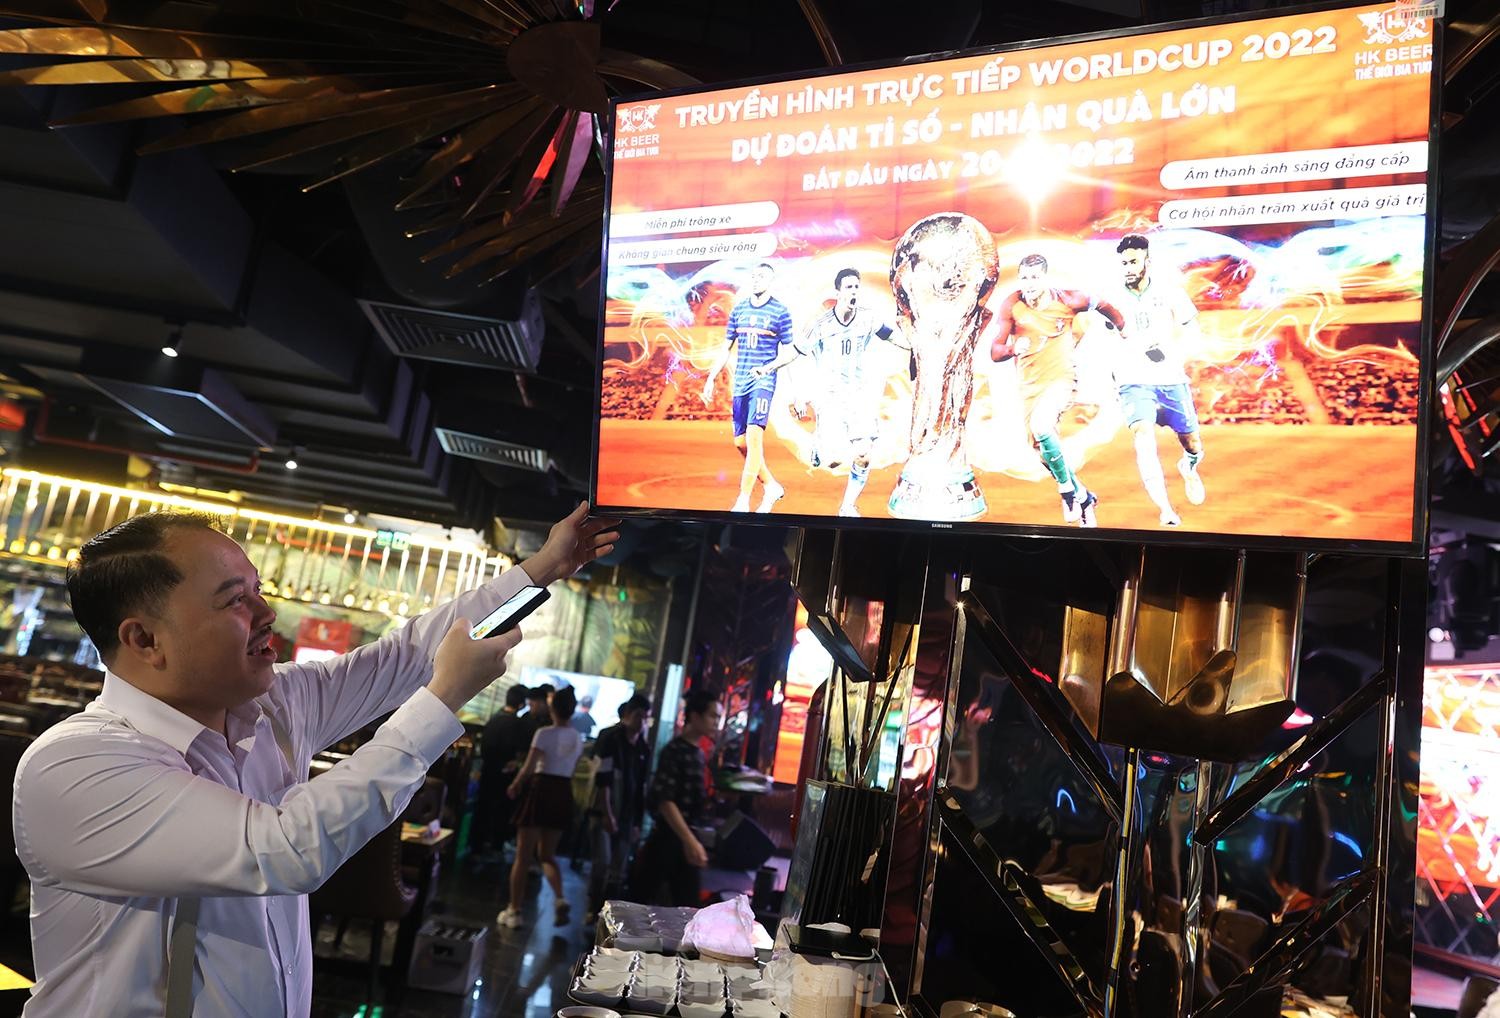 Hà Nội: Hàng quán chuẩn bị màn hình lớn phục vụ World Cup 2022 - Ảnh 3.